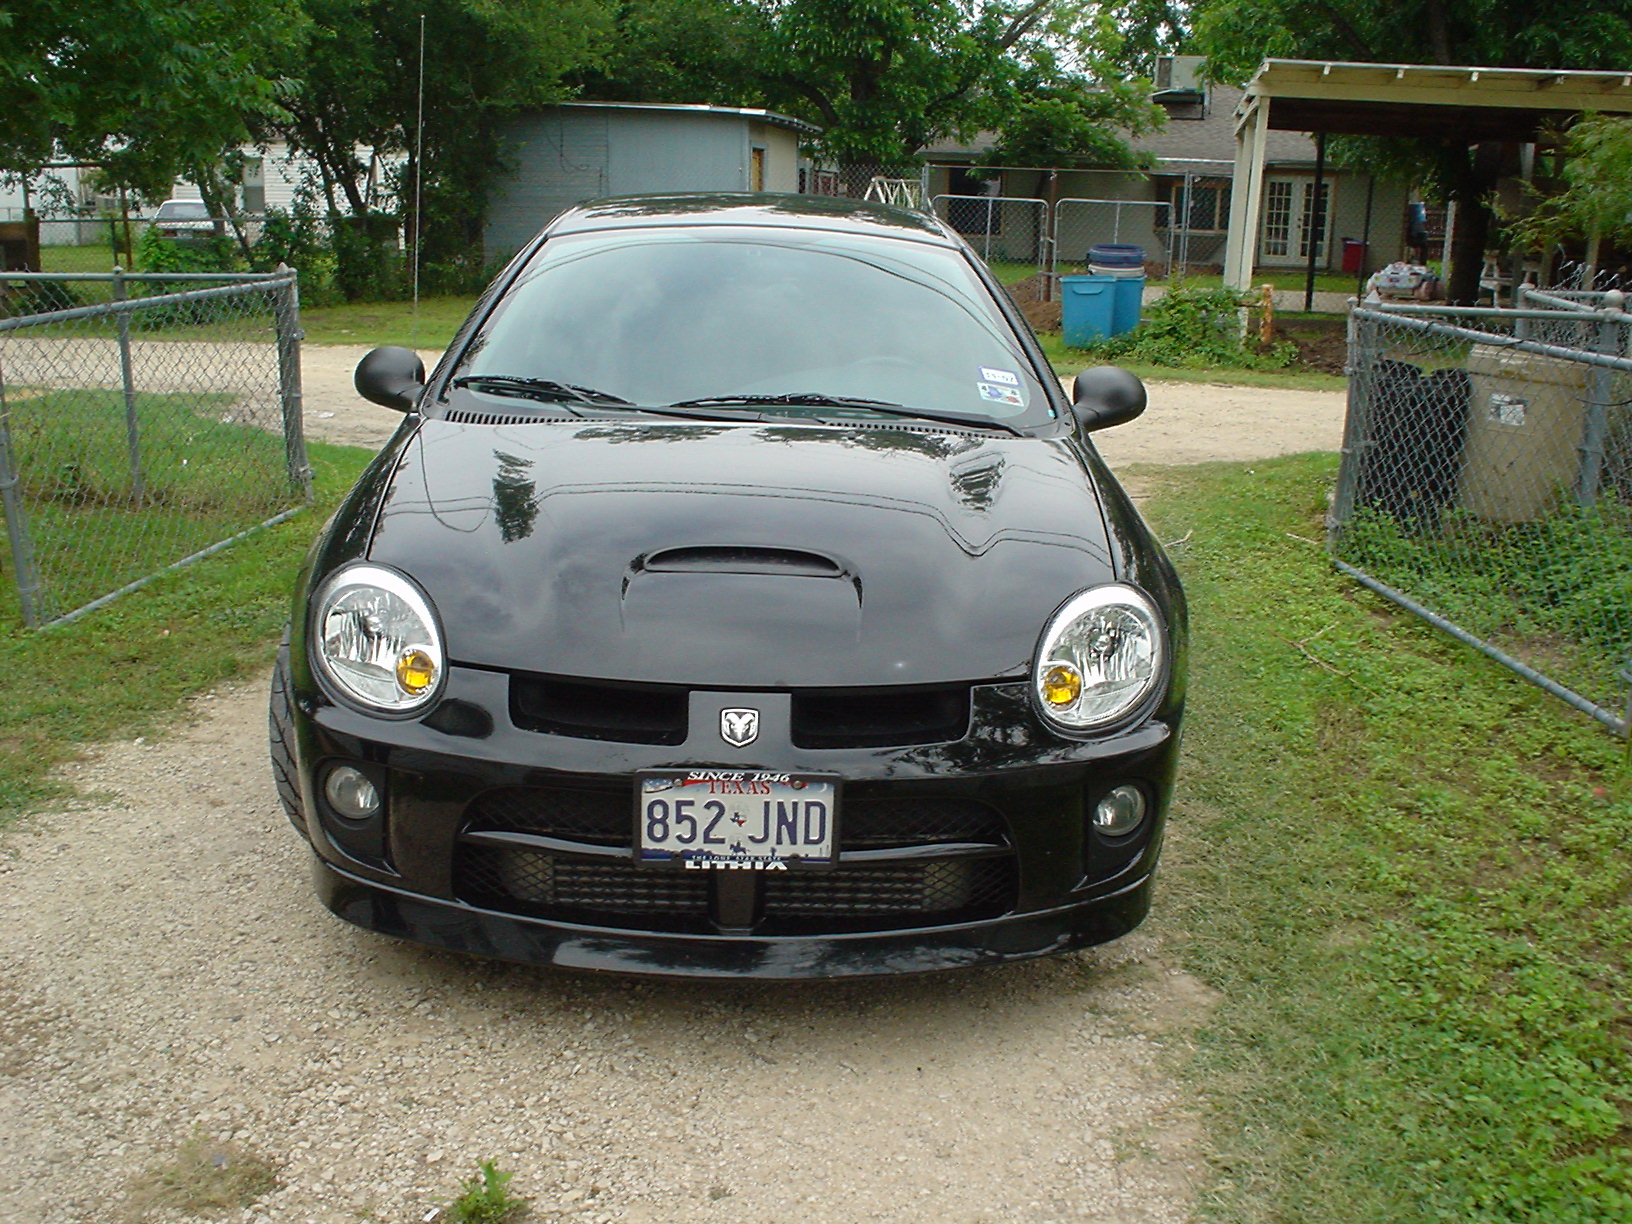  2005 Dodge Neon SRT-4 